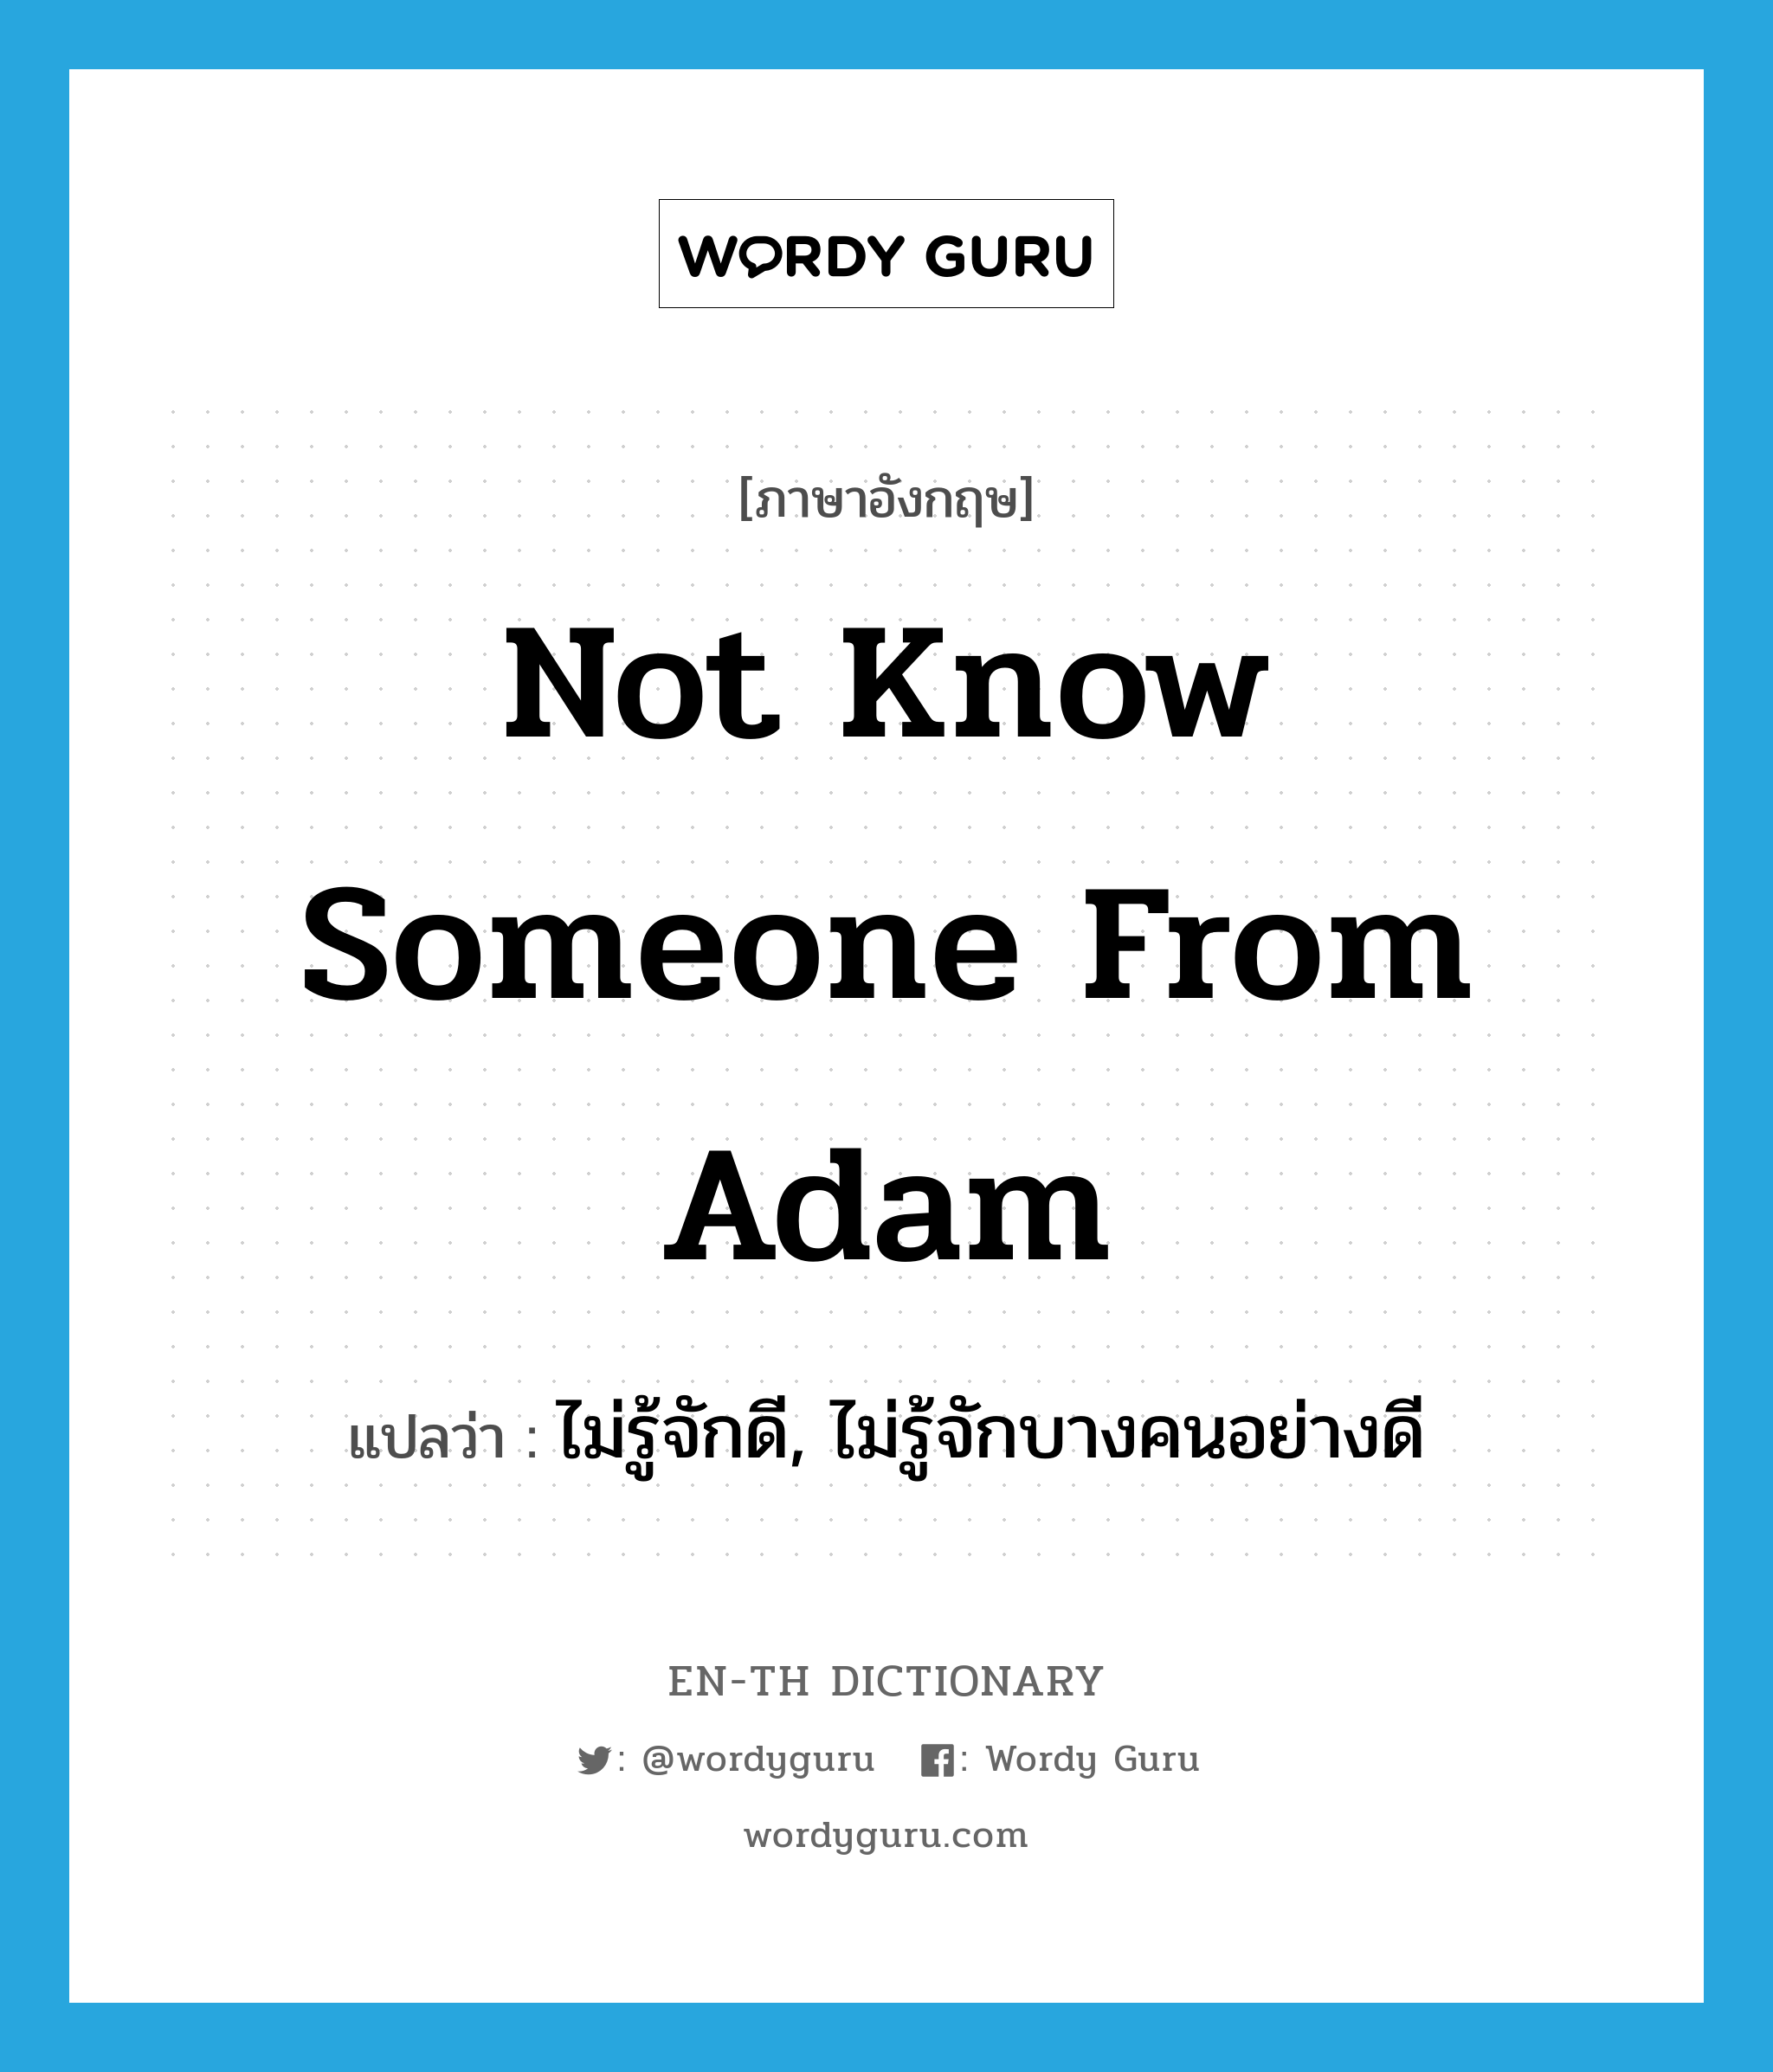 ไม่รู้จักดี, ไม่รู้จักบางคนอย่างดี ภาษาอังกฤษ?, คำศัพท์ภาษาอังกฤษ ไม่รู้จักดี, ไม่รู้จักบางคนอย่างดี แปลว่า not know someone from Adam ประเภท IDM หมวด IDM